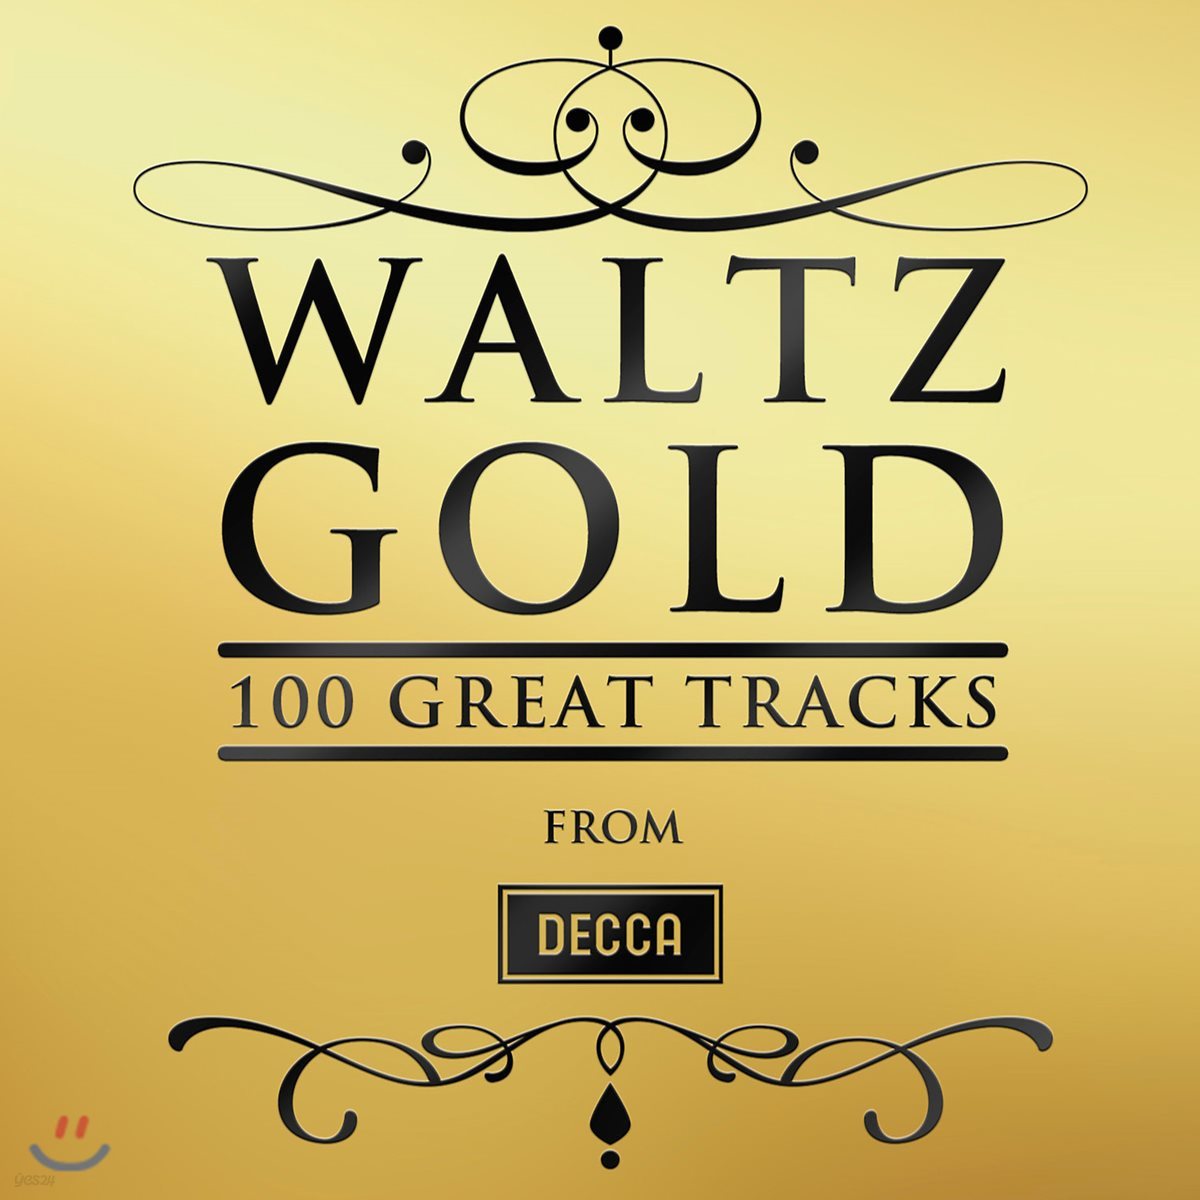 왈츠 골드 100 트랙스 (Waltz Gold - 100 Great Tracks)